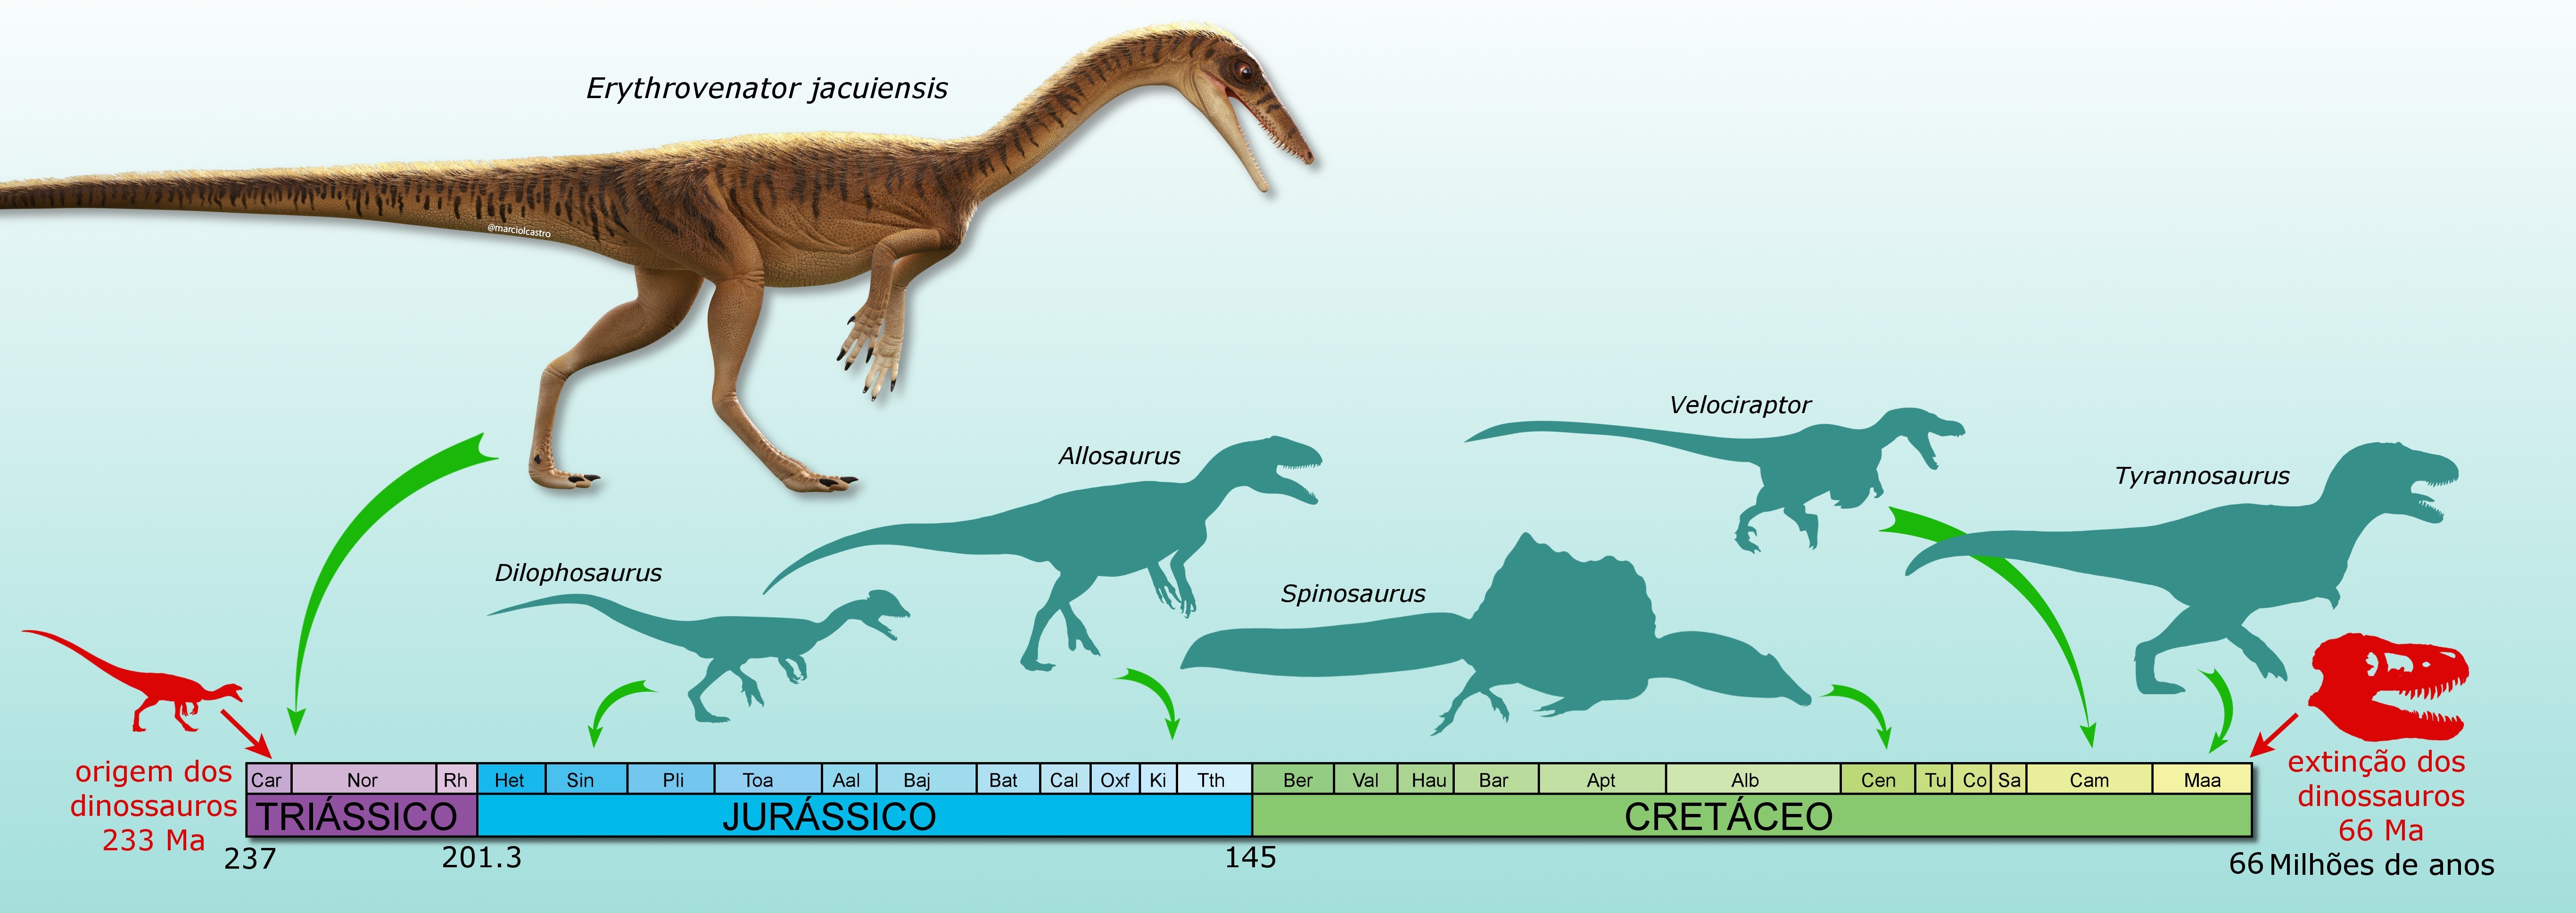 Erythrovenator jacuiensis e outros dinossauros terópodes (Foto: Márcio L. Castro)